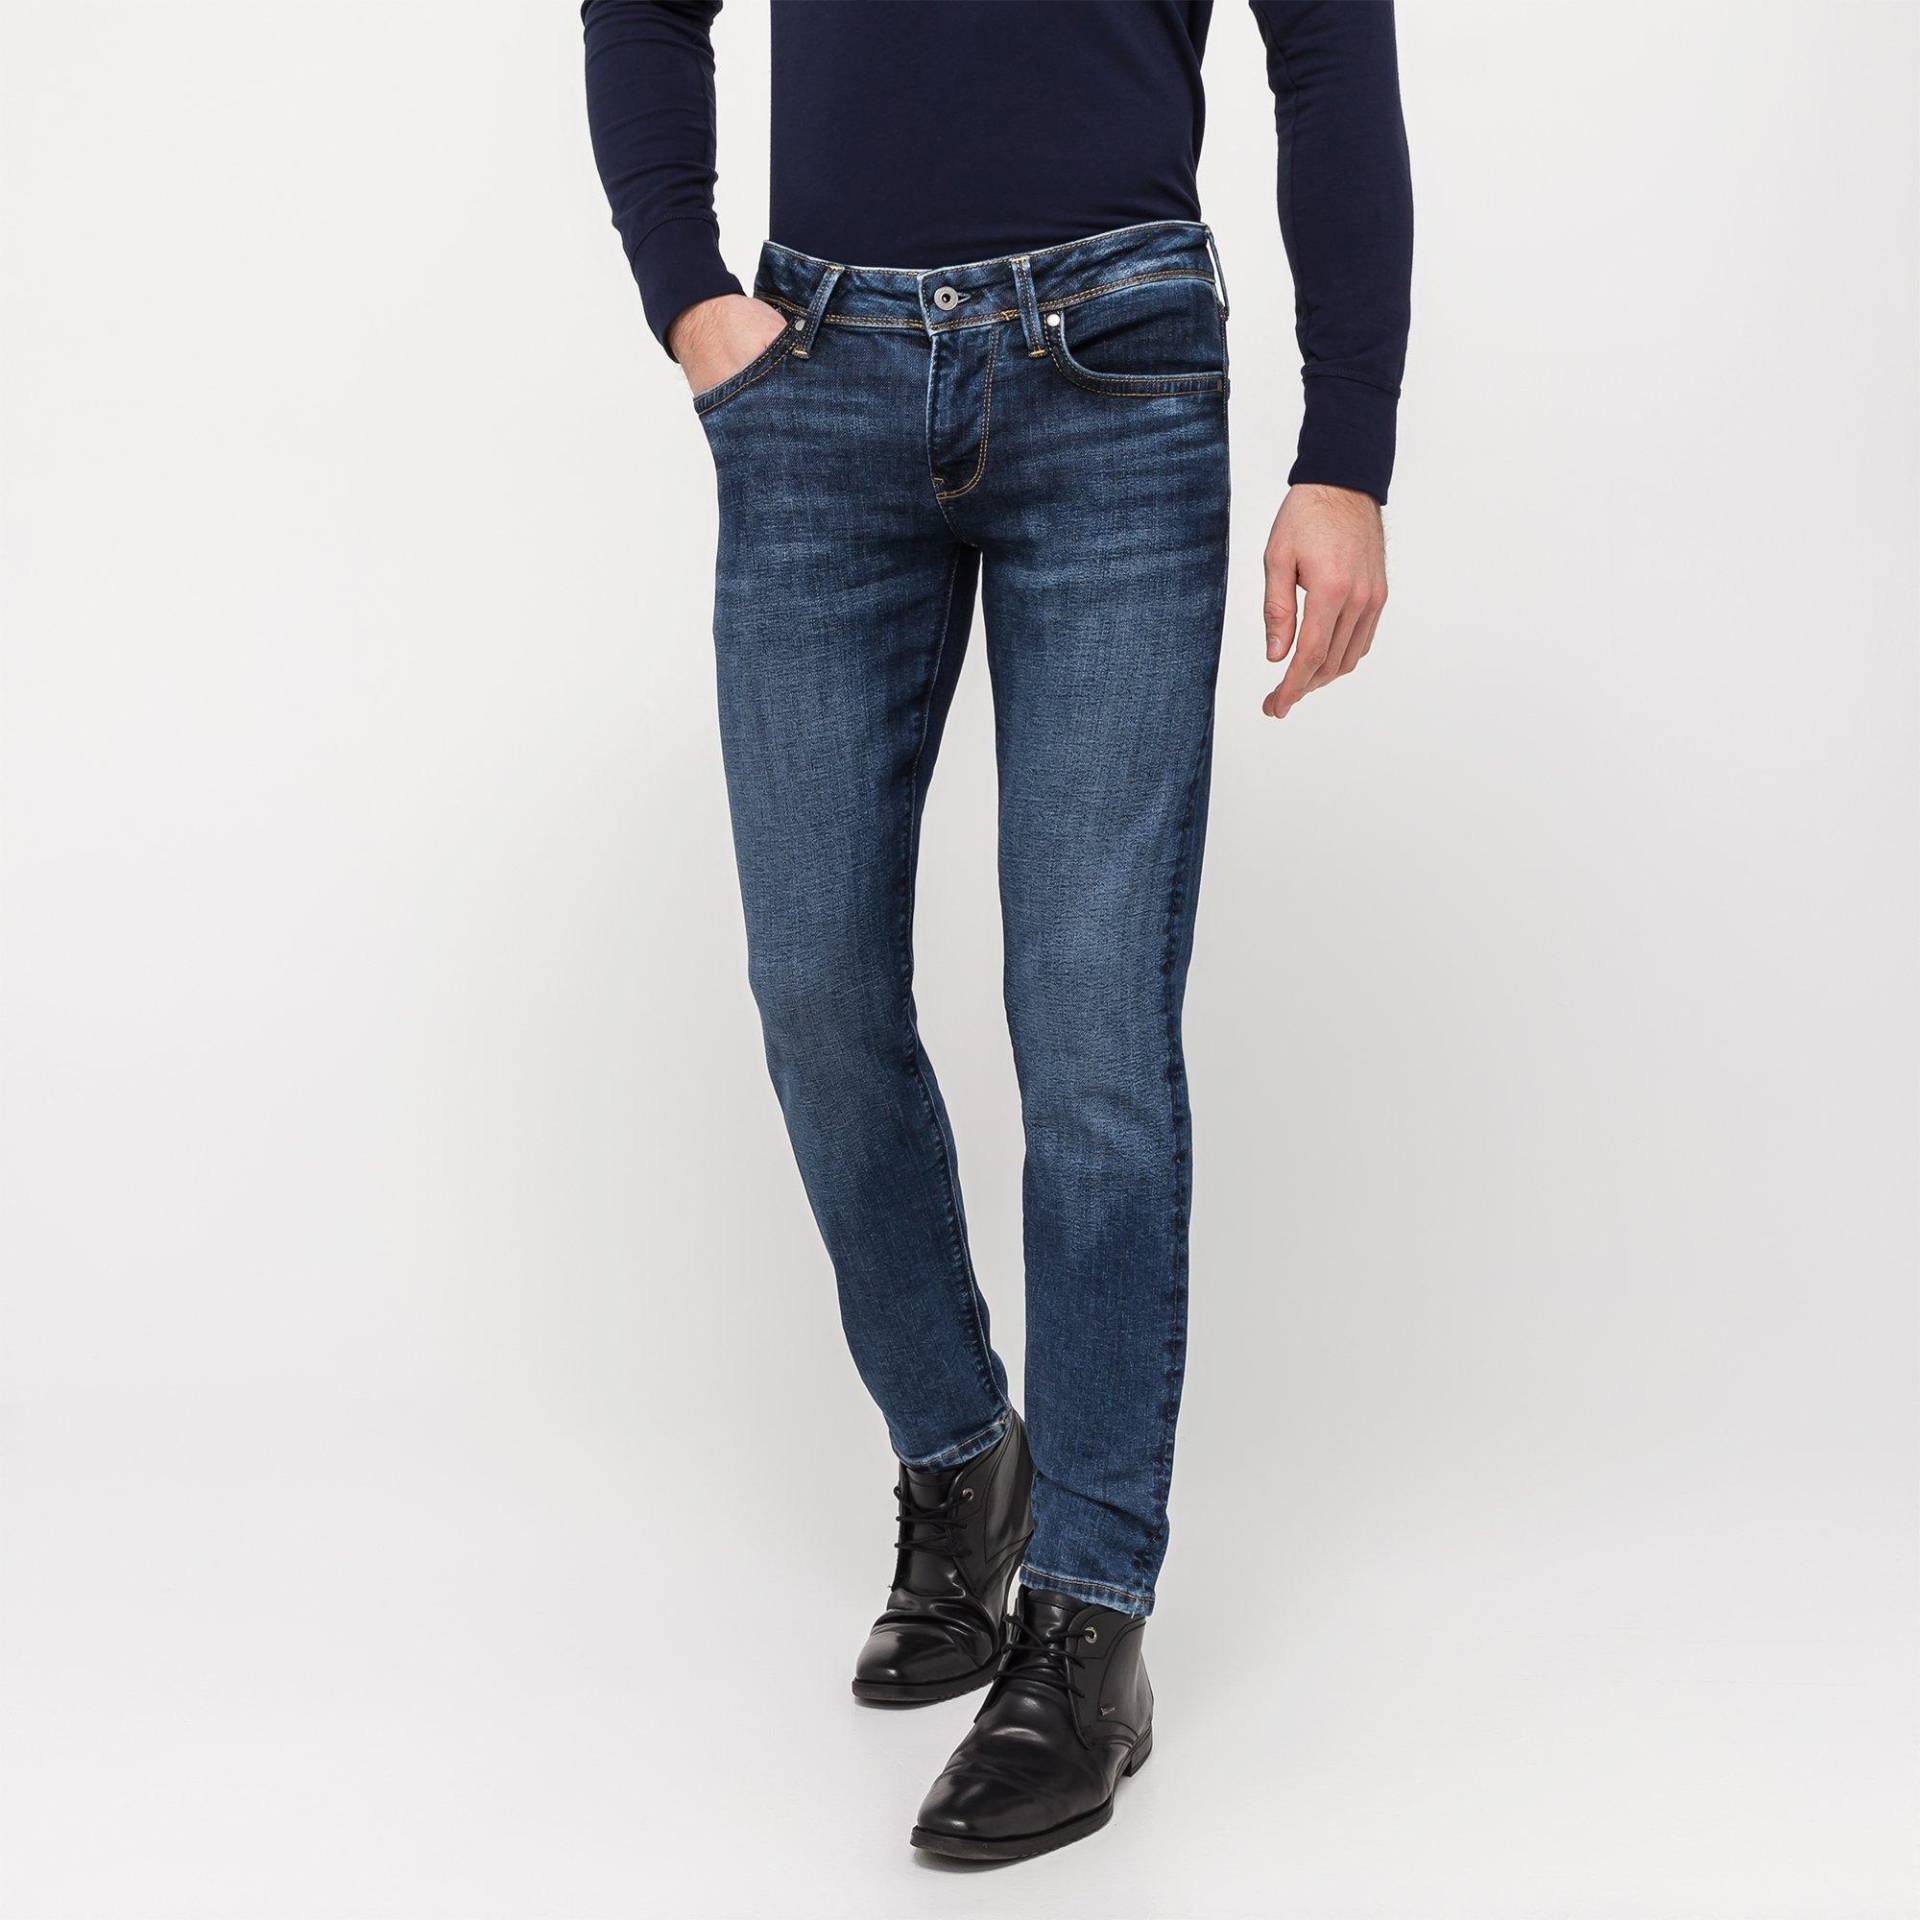 Jeans, Slim Fit Herren Jeans W36 von Pepe Jeans